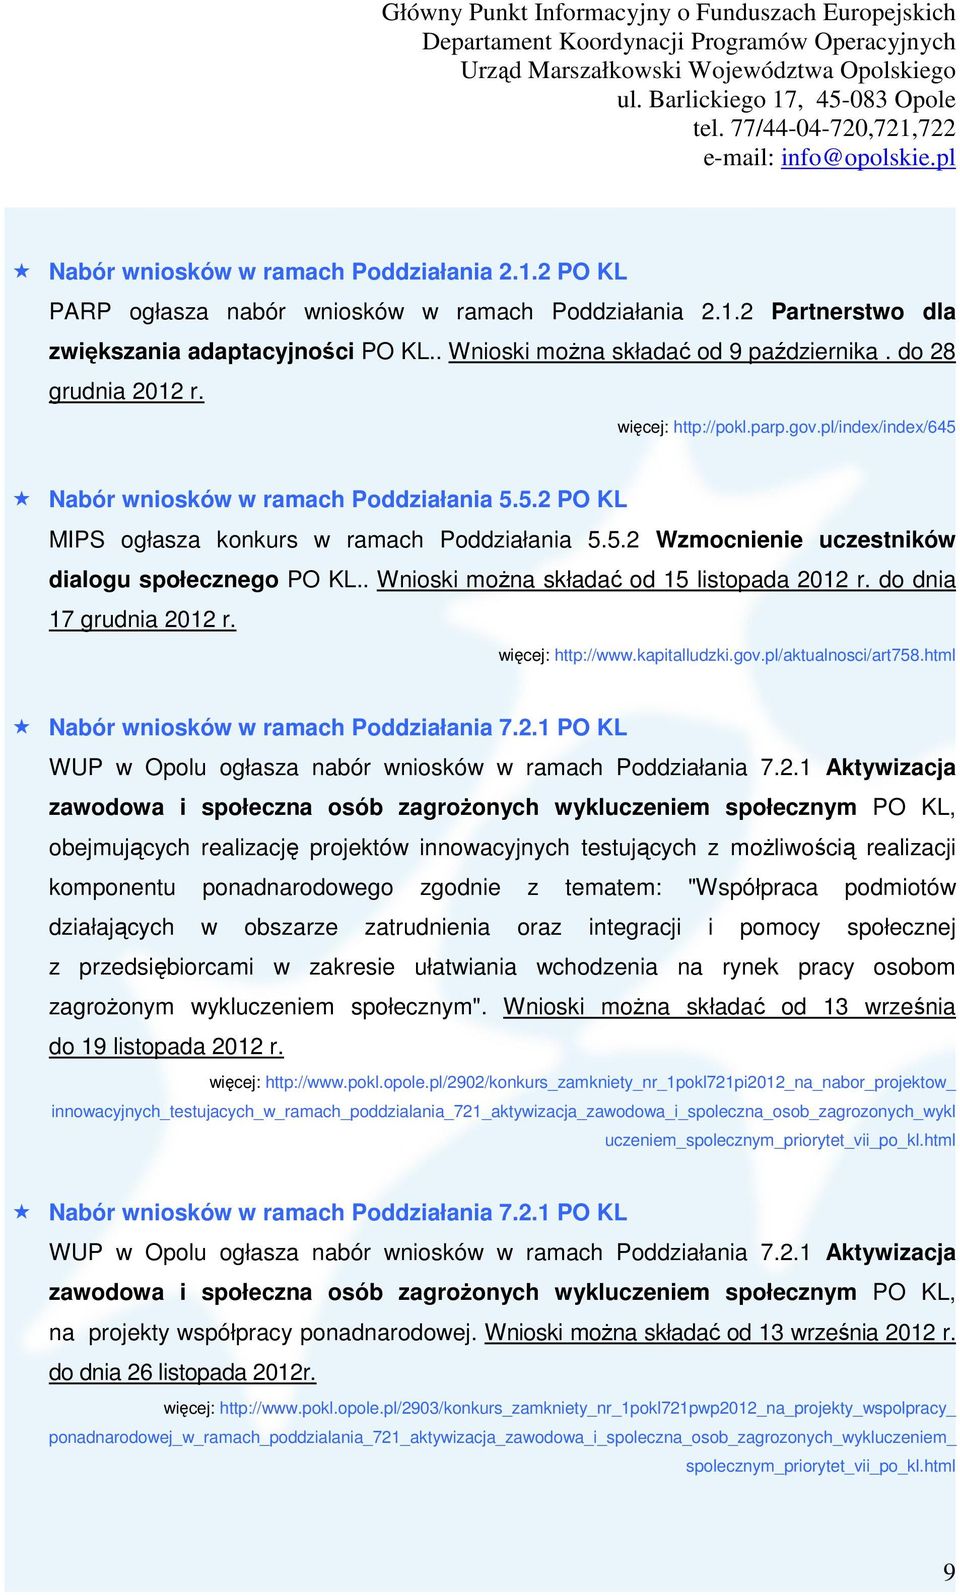 . Wnioski można składać od 15 listopada 2012 r. do dnia 17 grudnia 2012 r. więcej: http://www.kapitalludzki.gov.pl/aktualnosci/art758.html Nabór wniosków w ramach Poddziałania 7.2.1 PO KL WUP w Opolu ogłasza nabór wniosków w ramach Poddziałania 7.